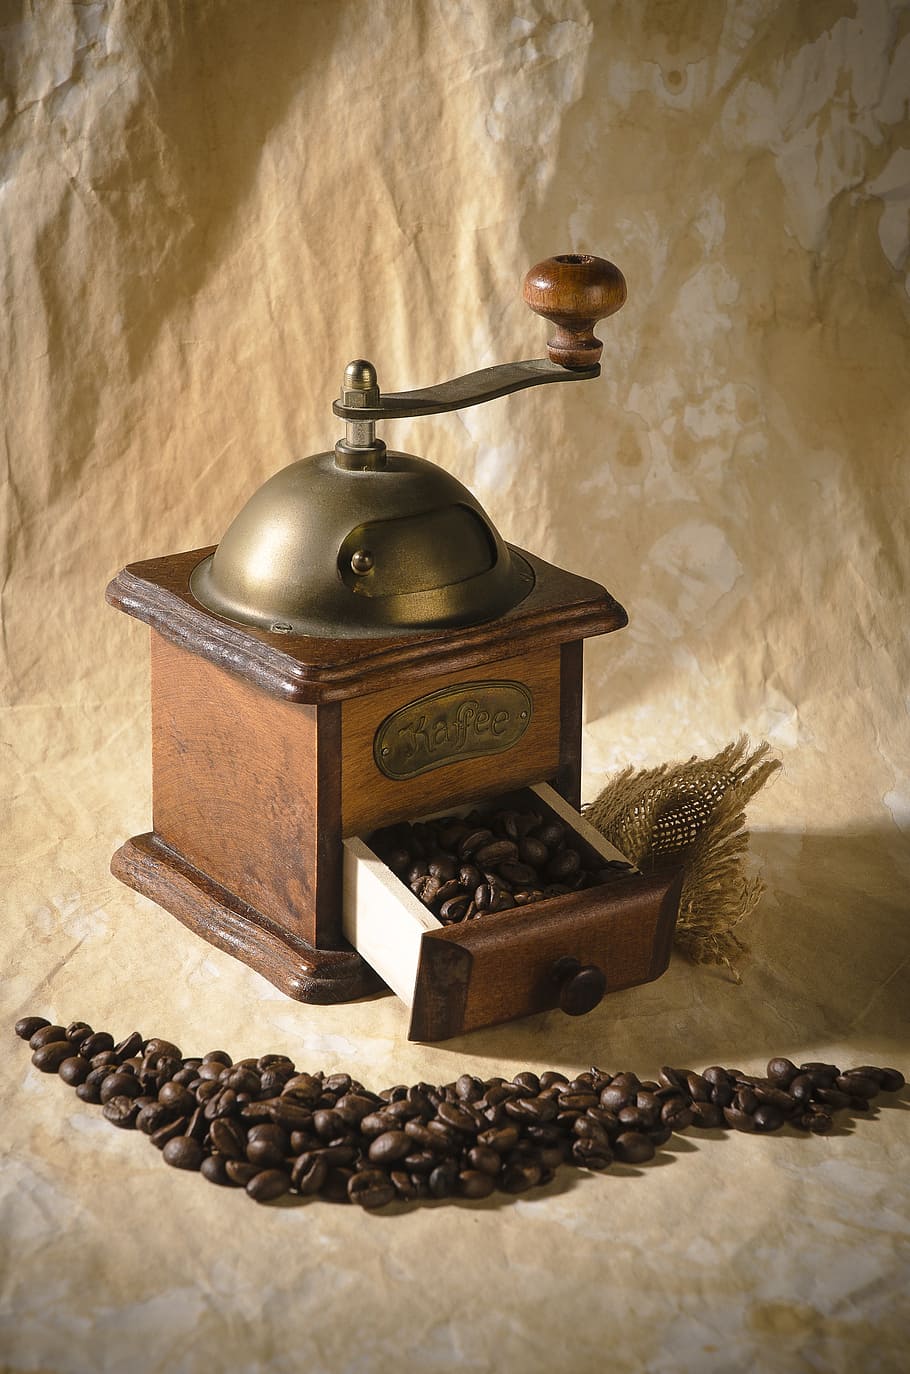 brown, vintage, coffee grinder, coffee, still life, grain coffee, cup, grain, grinder, studio